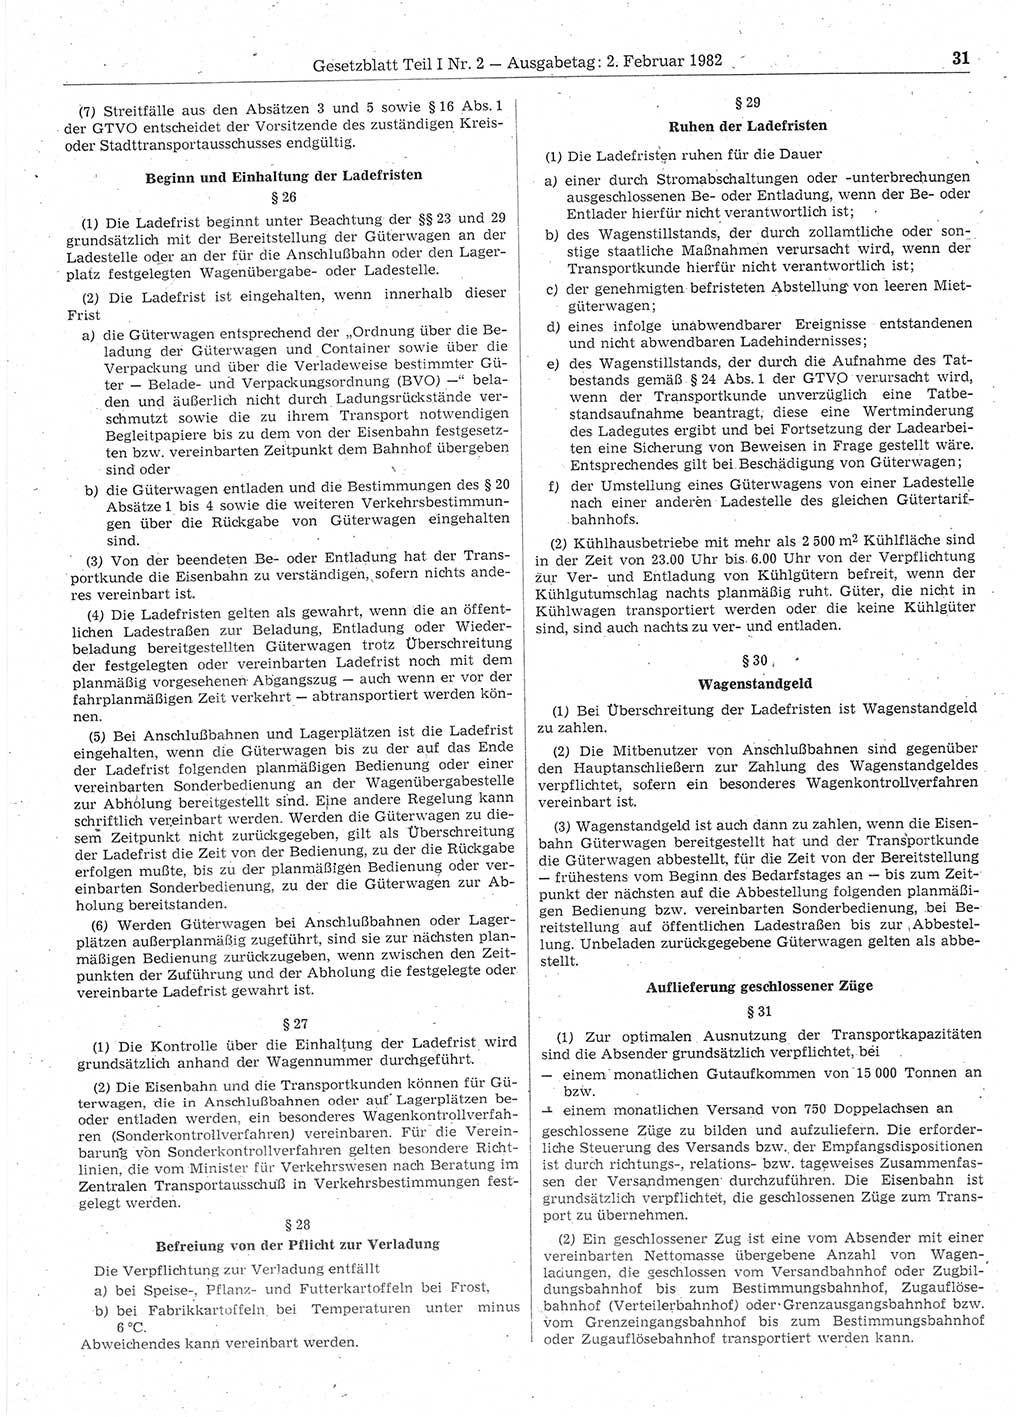 Gesetzblatt (GBl.) der Deutschen Demokratischen Republik (DDR) Teil Ⅰ 1982, Seite 31 (GBl. DDR Ⅰ 1982, S. 31)